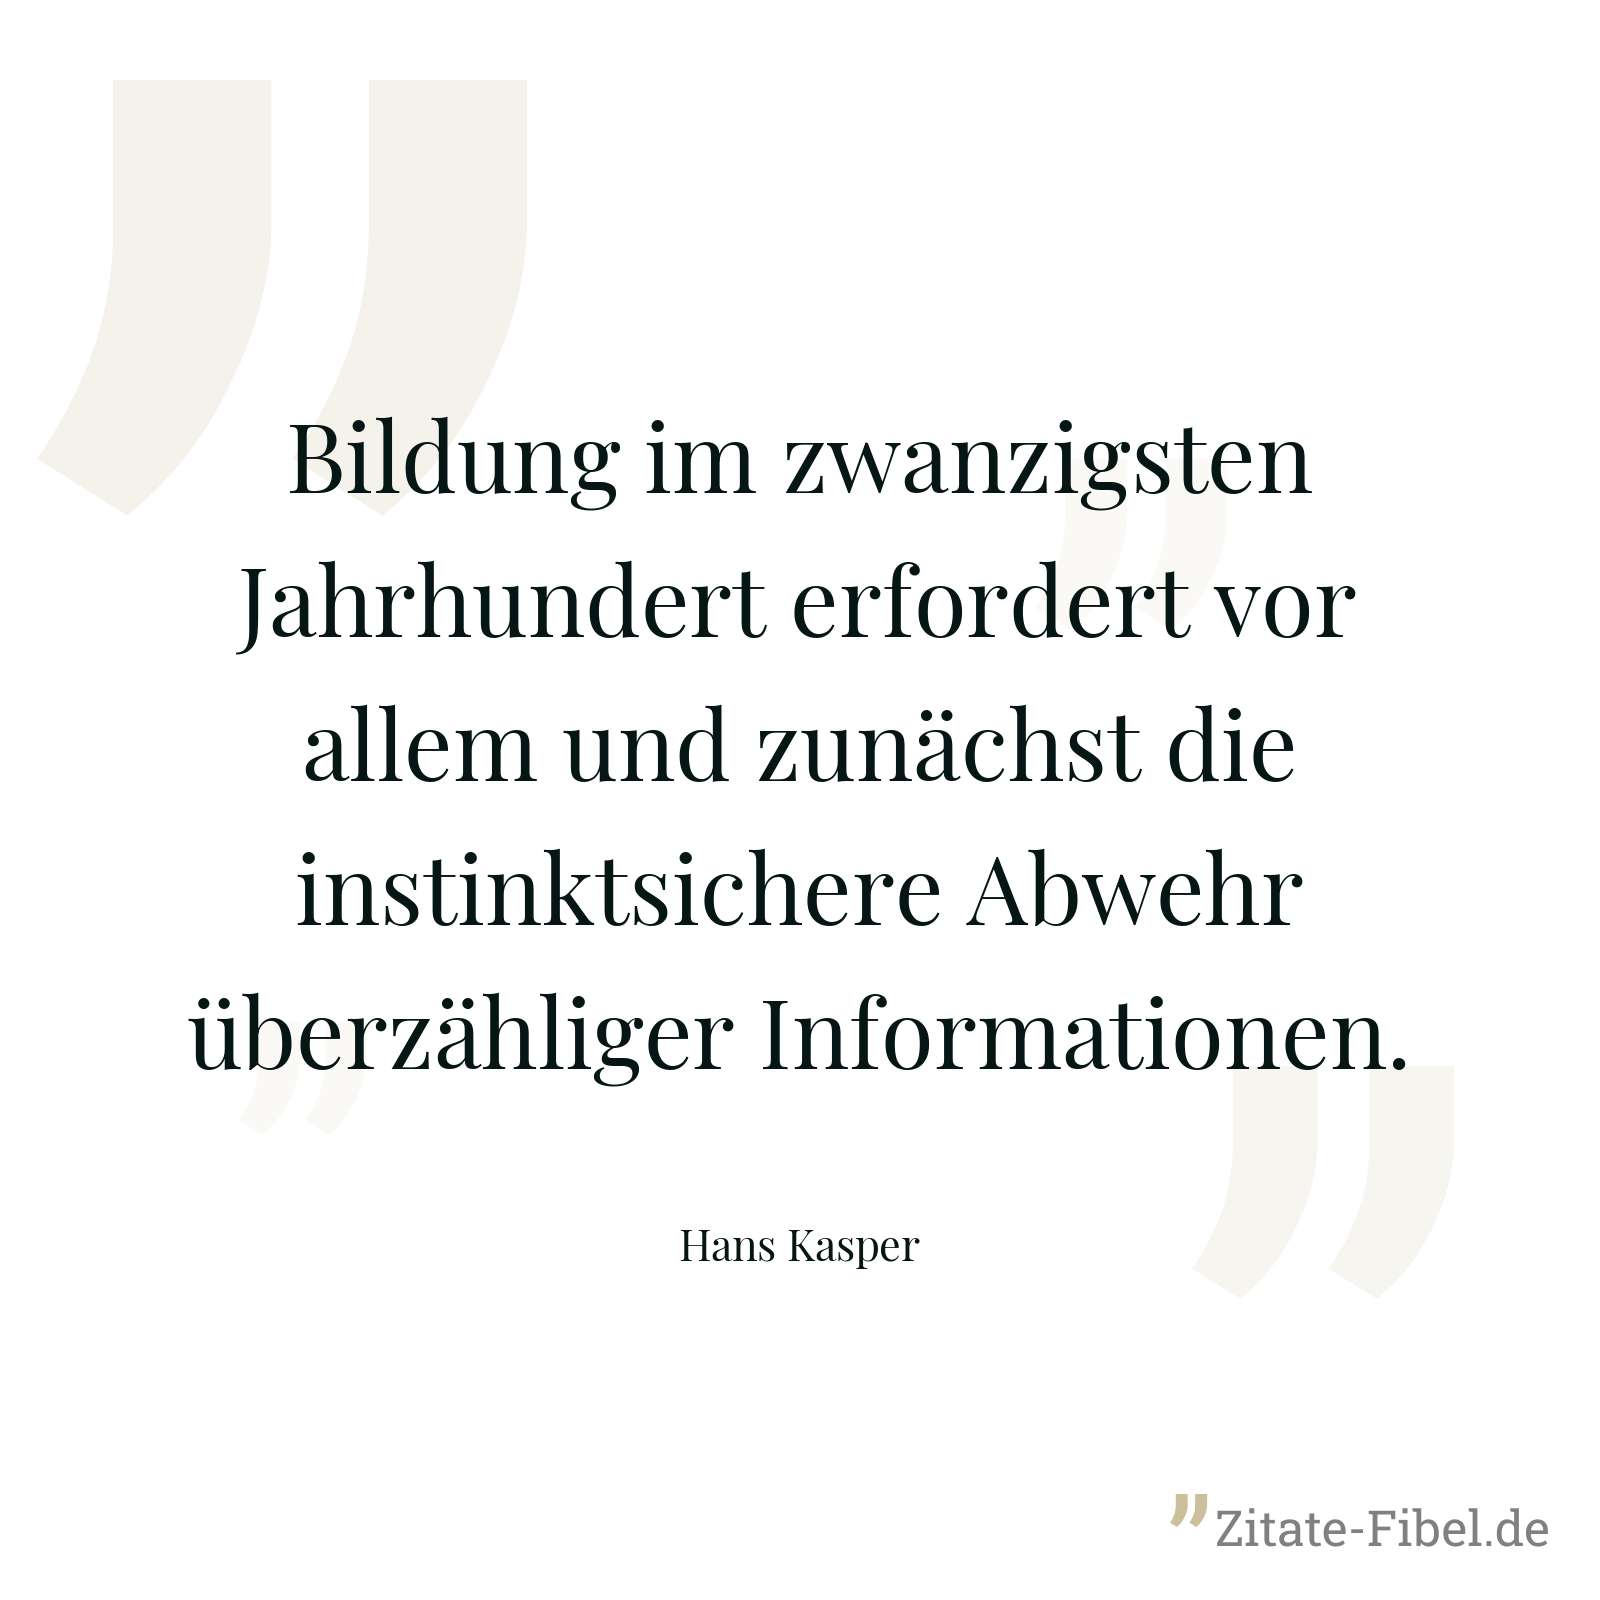 Bildung im zwanzigsten Jahrhundert erfordert vor allem und zunächst die instinktsichere Abwehr überzähliger Informationen. - Hans Kasper